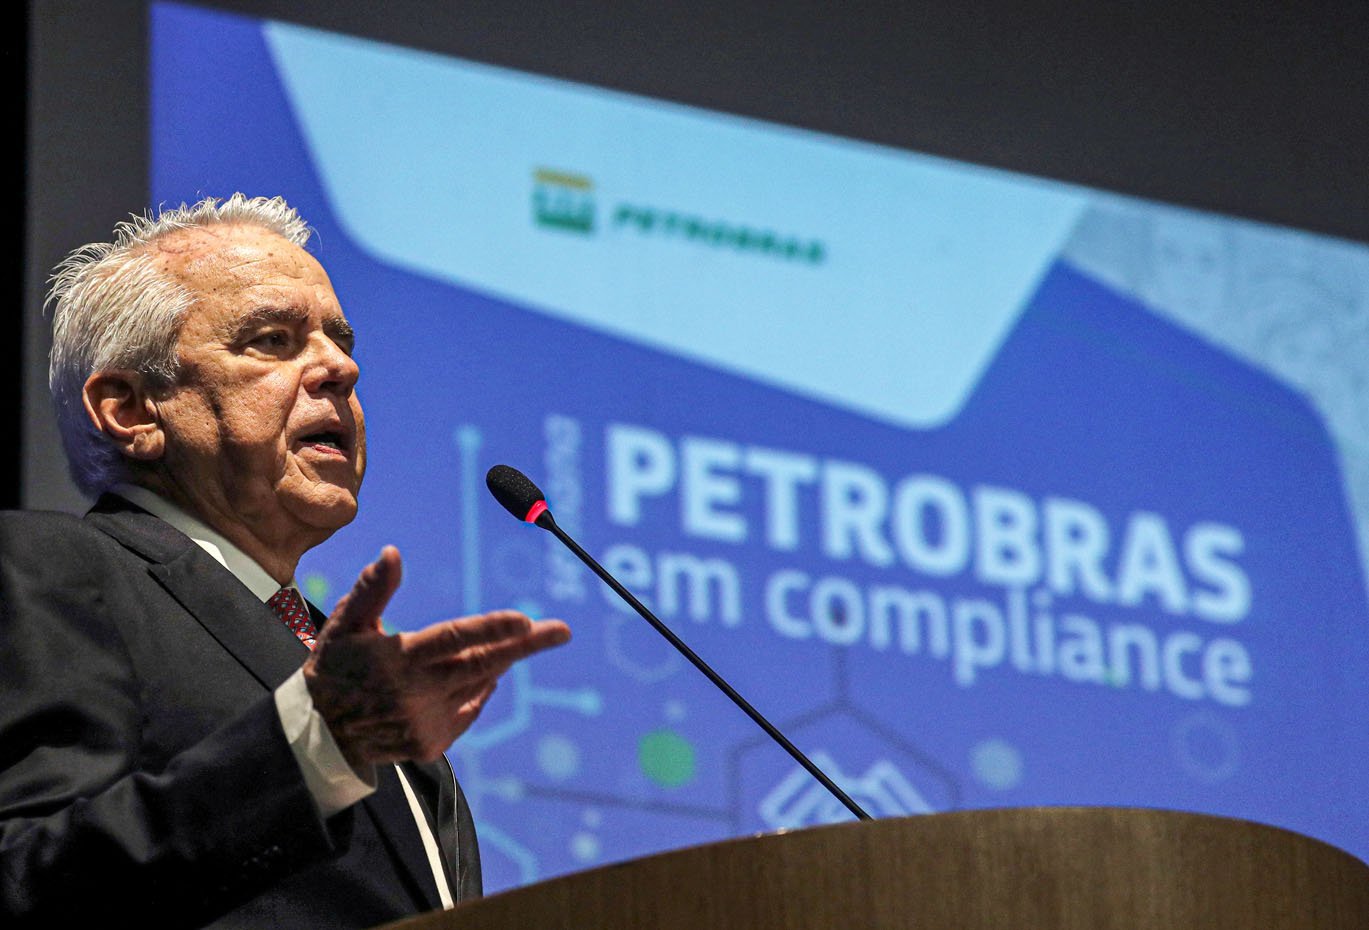 Roberto Castello Branco, CEO da Petróleo Brasileiro S.A. (PETROBRAS), fala durante evento de compliance no Rio de Janeiro, Brasil, em 9 de dezembro de 2019. REUTERS / Sergio Moraes